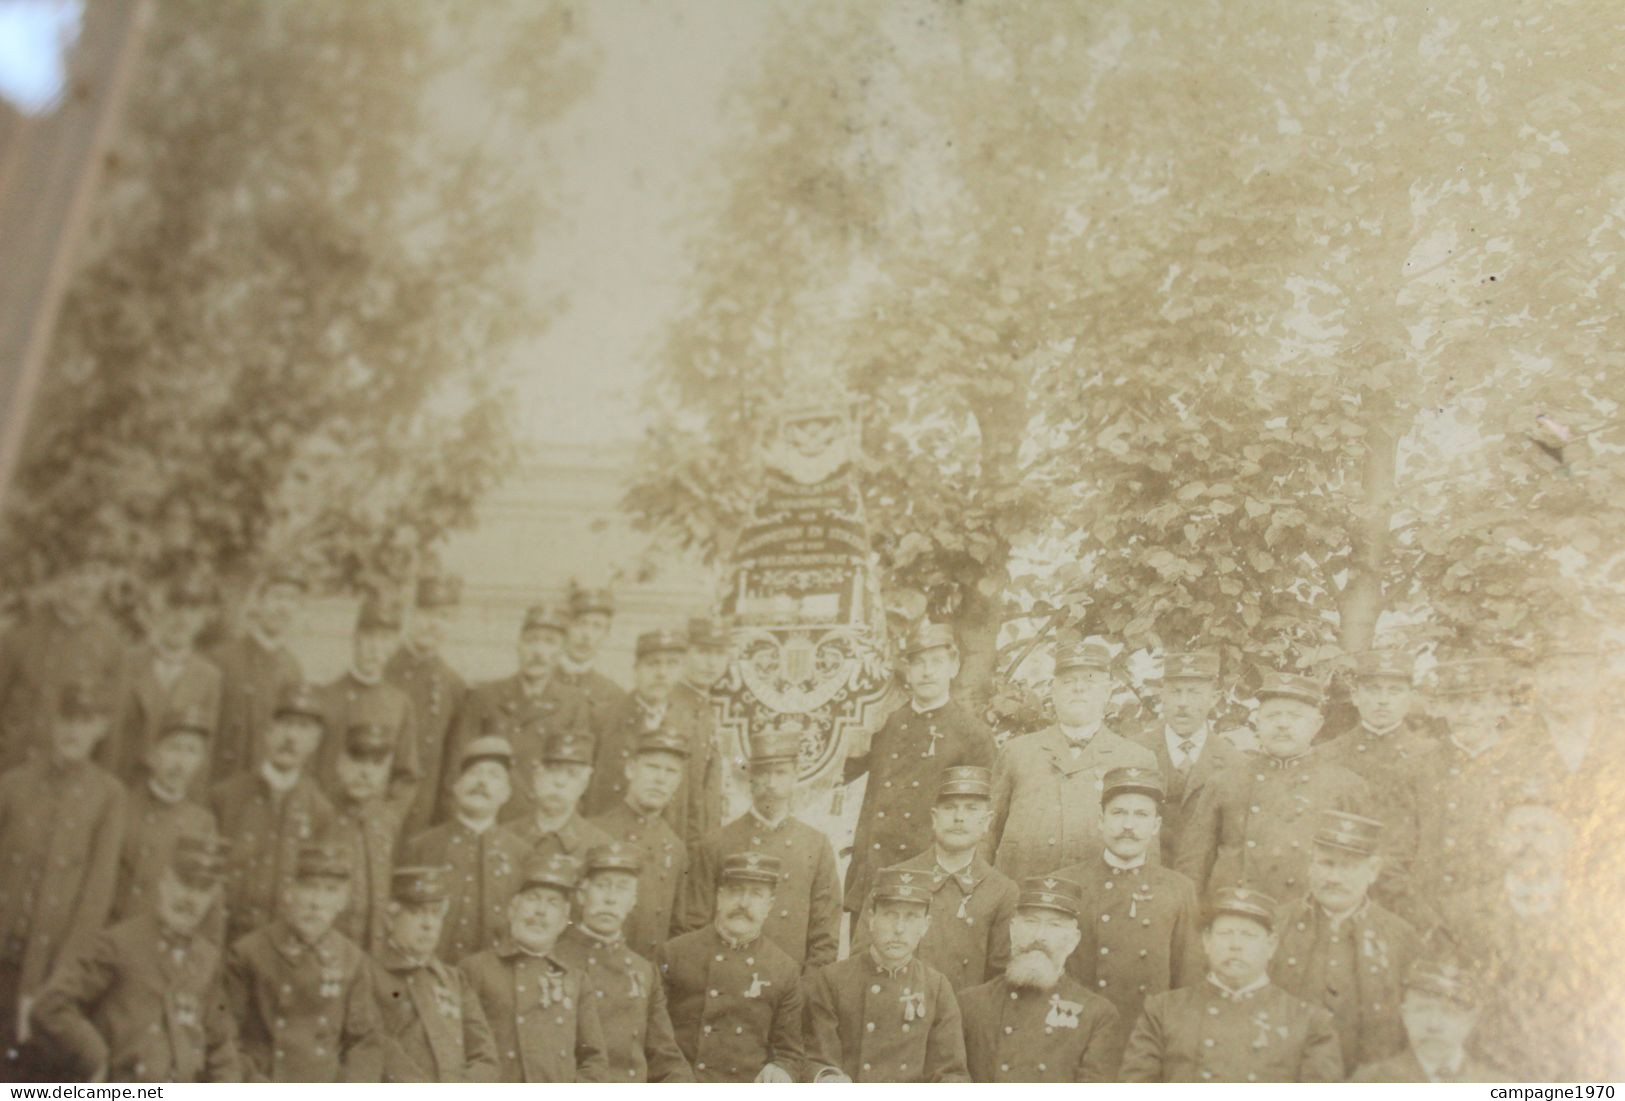 TRES RARE !! PHOTO VERS 1890 - SNCB NMBS - VERENIGING DER MACHINISTEN EN STOKERS MALINES MECHELEN - CHEMIN DE FER - Oud (voor 1900)